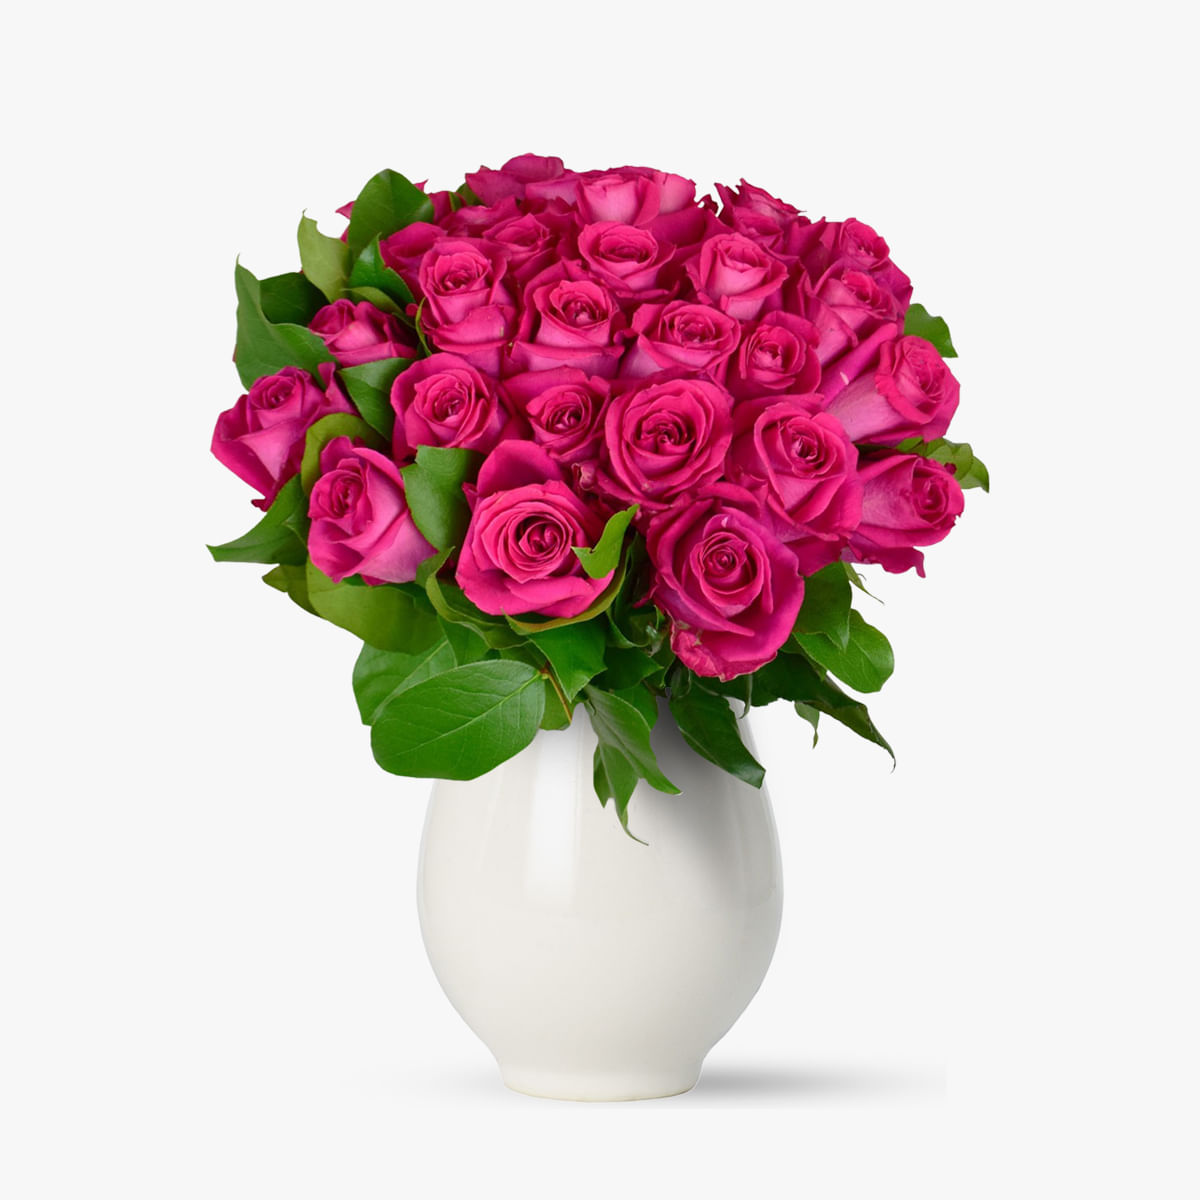 Buchet de 27 trandafiri roz floria.ro